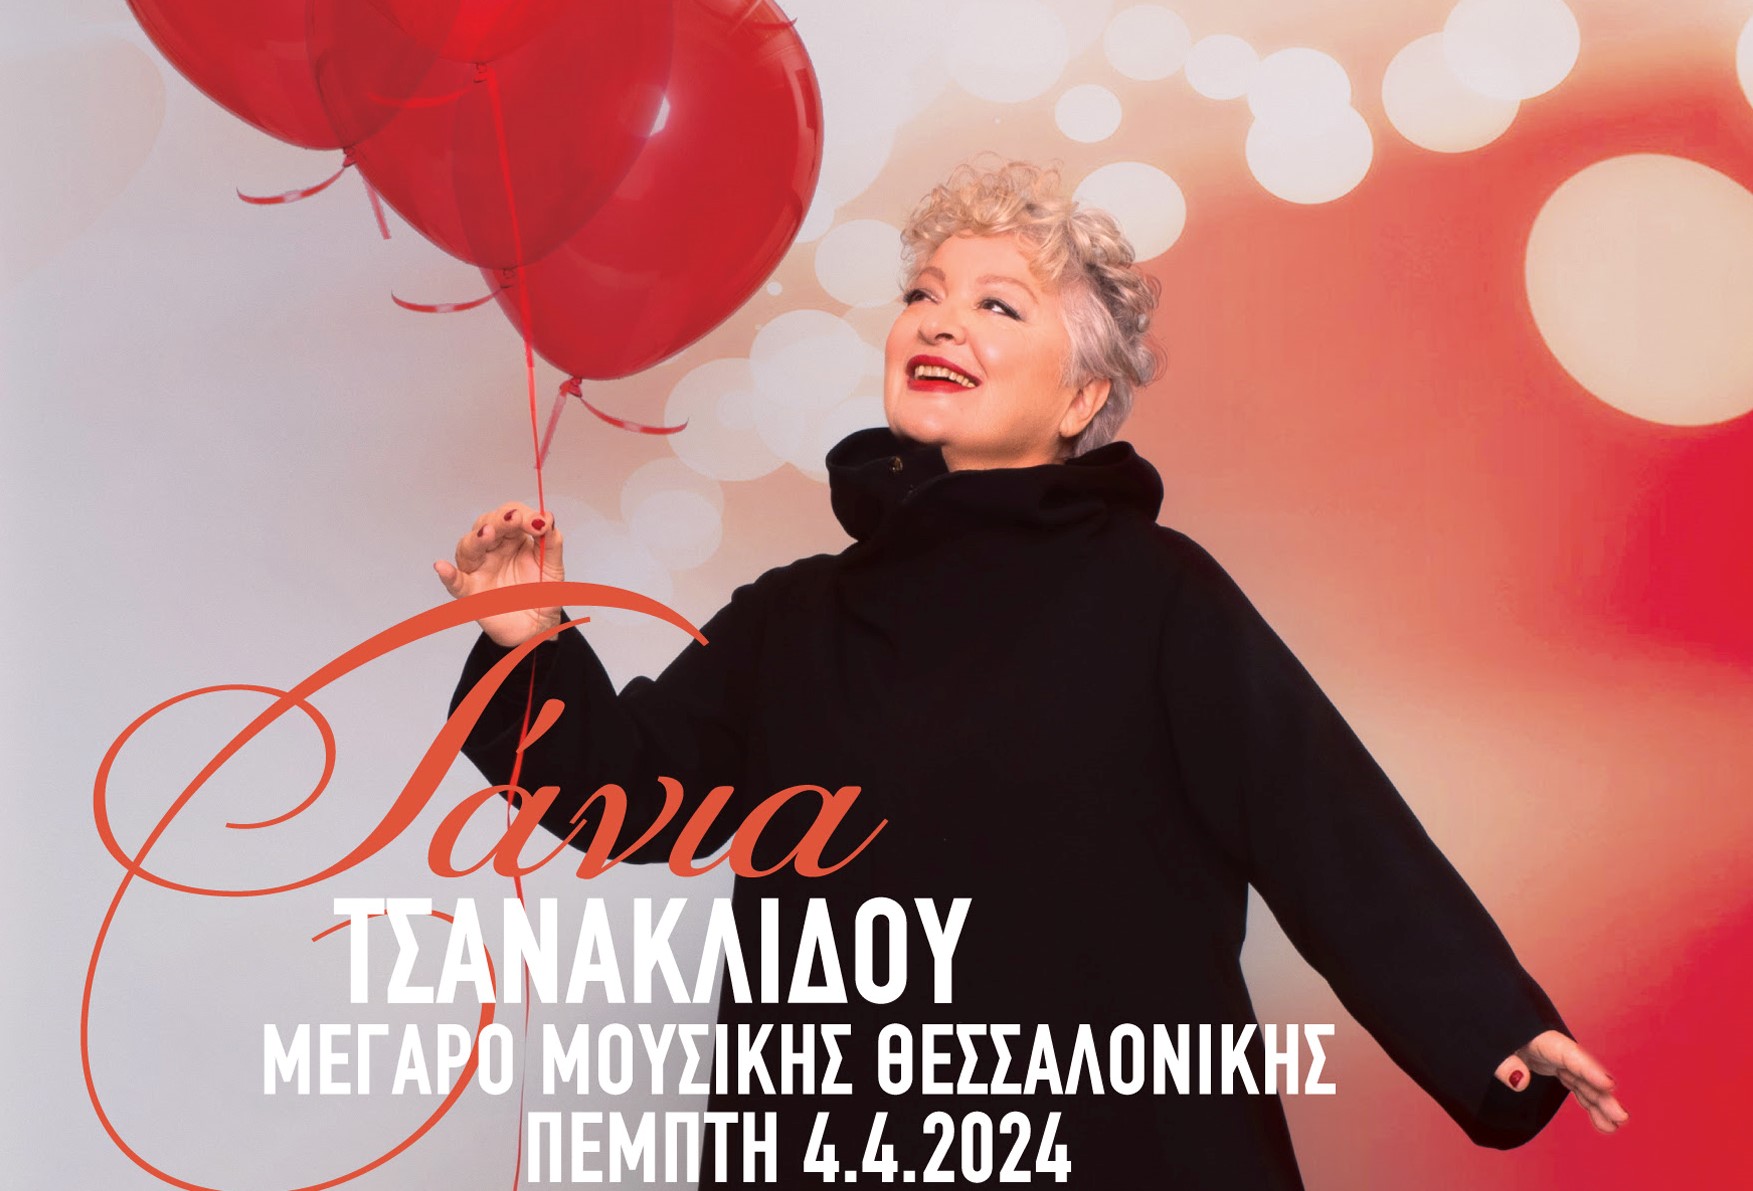 Θεσσαλονίκη: Η Τάνια Τσανακλίδου έρχεται στο Μέγαρο Μουσικής